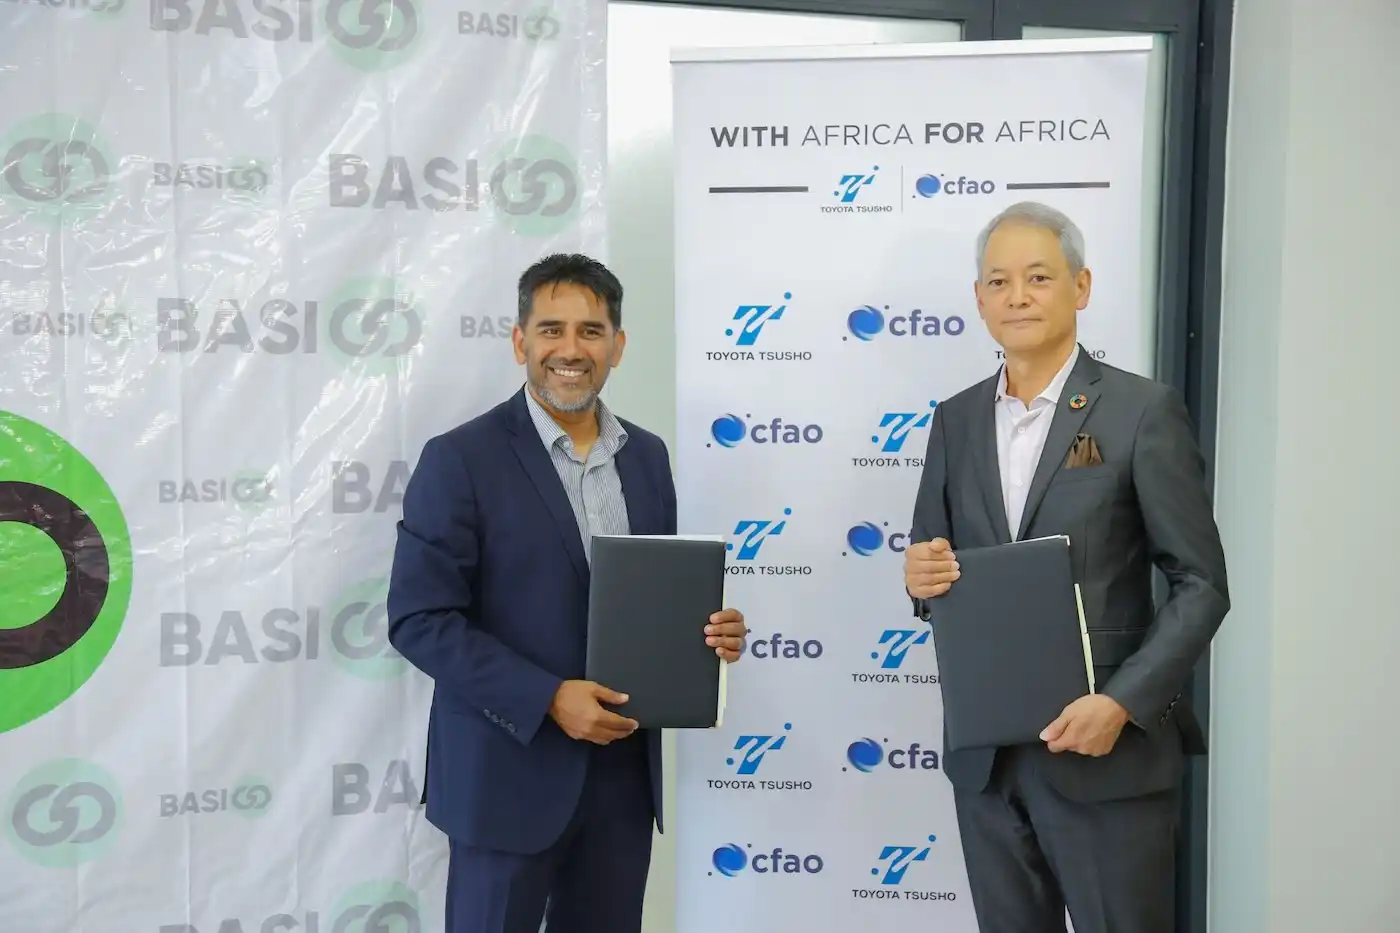 CFAO investment in BasiGo